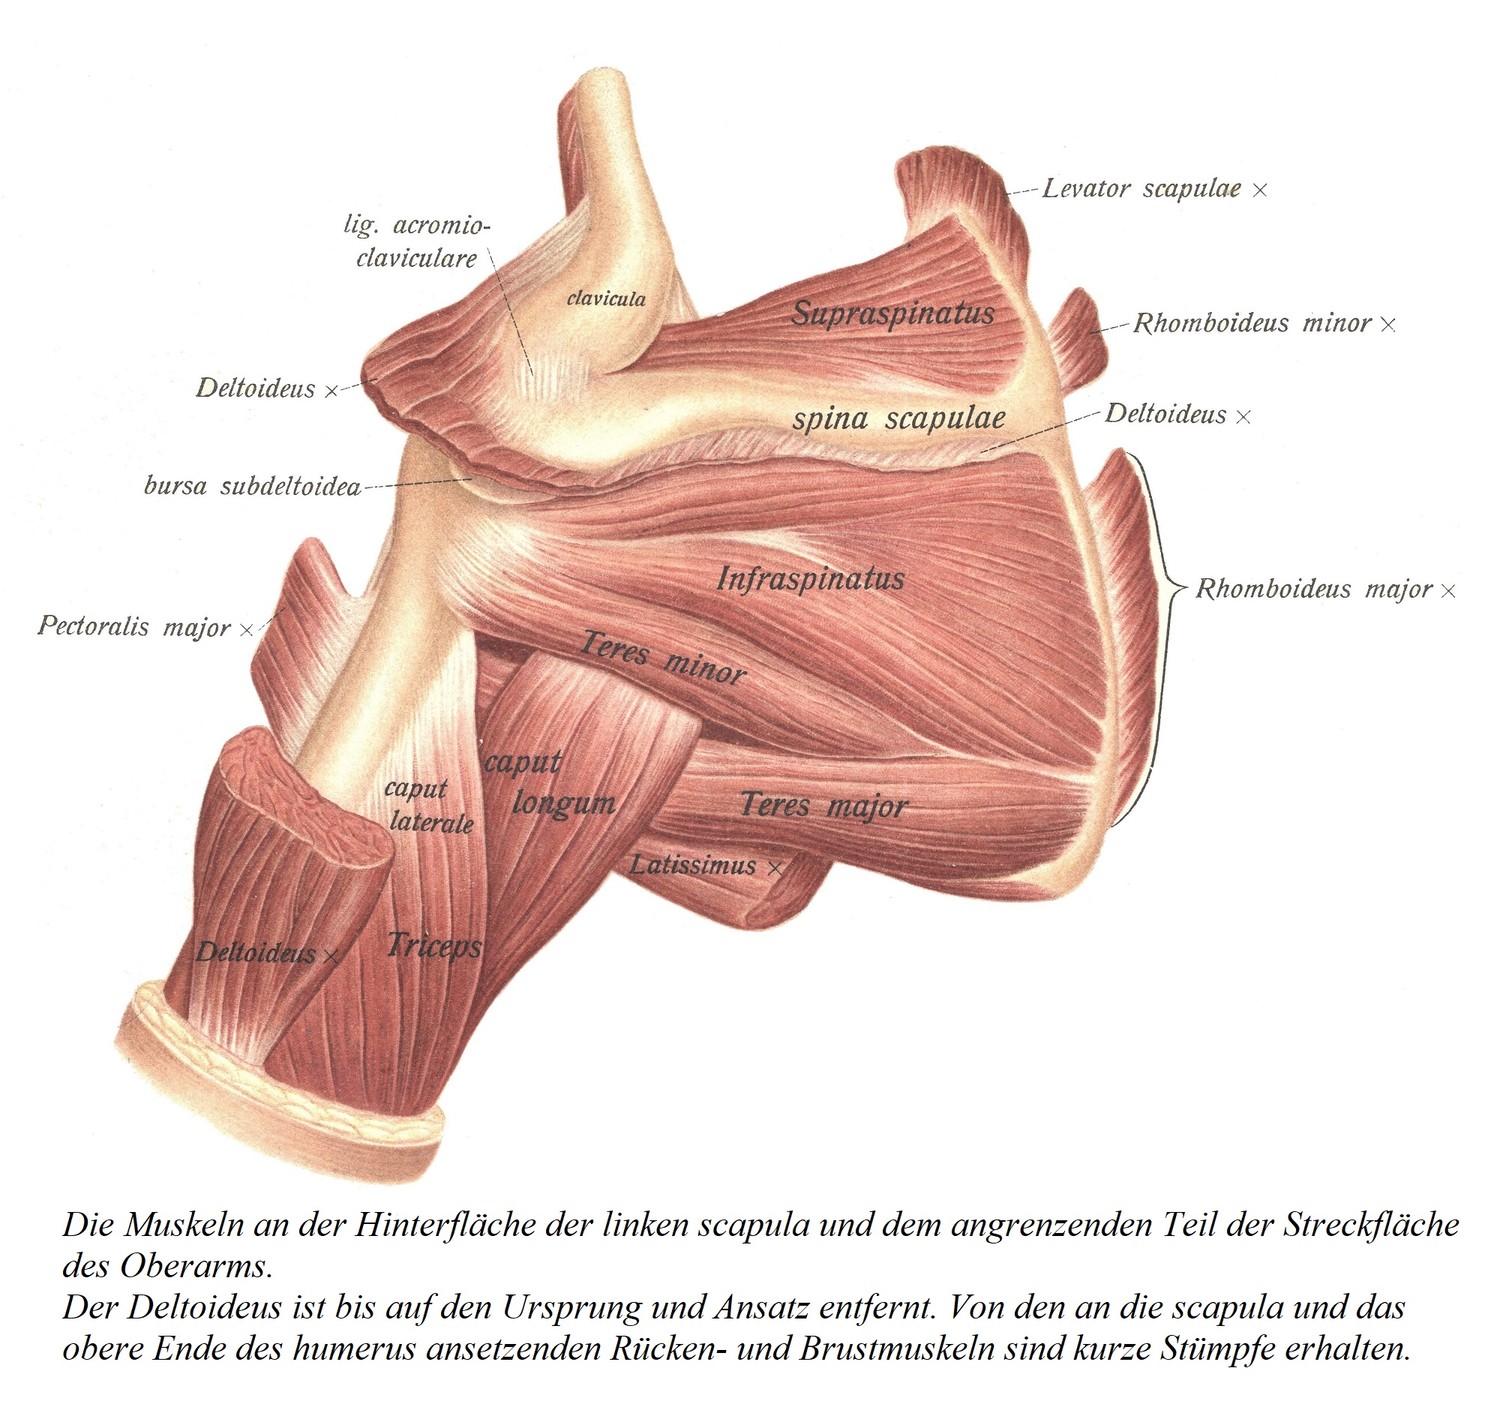 Мышцы задней поверхности левой лопатки и прилежащего участка разгибательной поверхности плечевой кости. Дельтовидная мышца удаляется, за исключением начала и вставки. Сохранены короткие культи тыльной и грудной мышц, прикрепляющиеся к лопатке и верхнему концу плечевой кости.